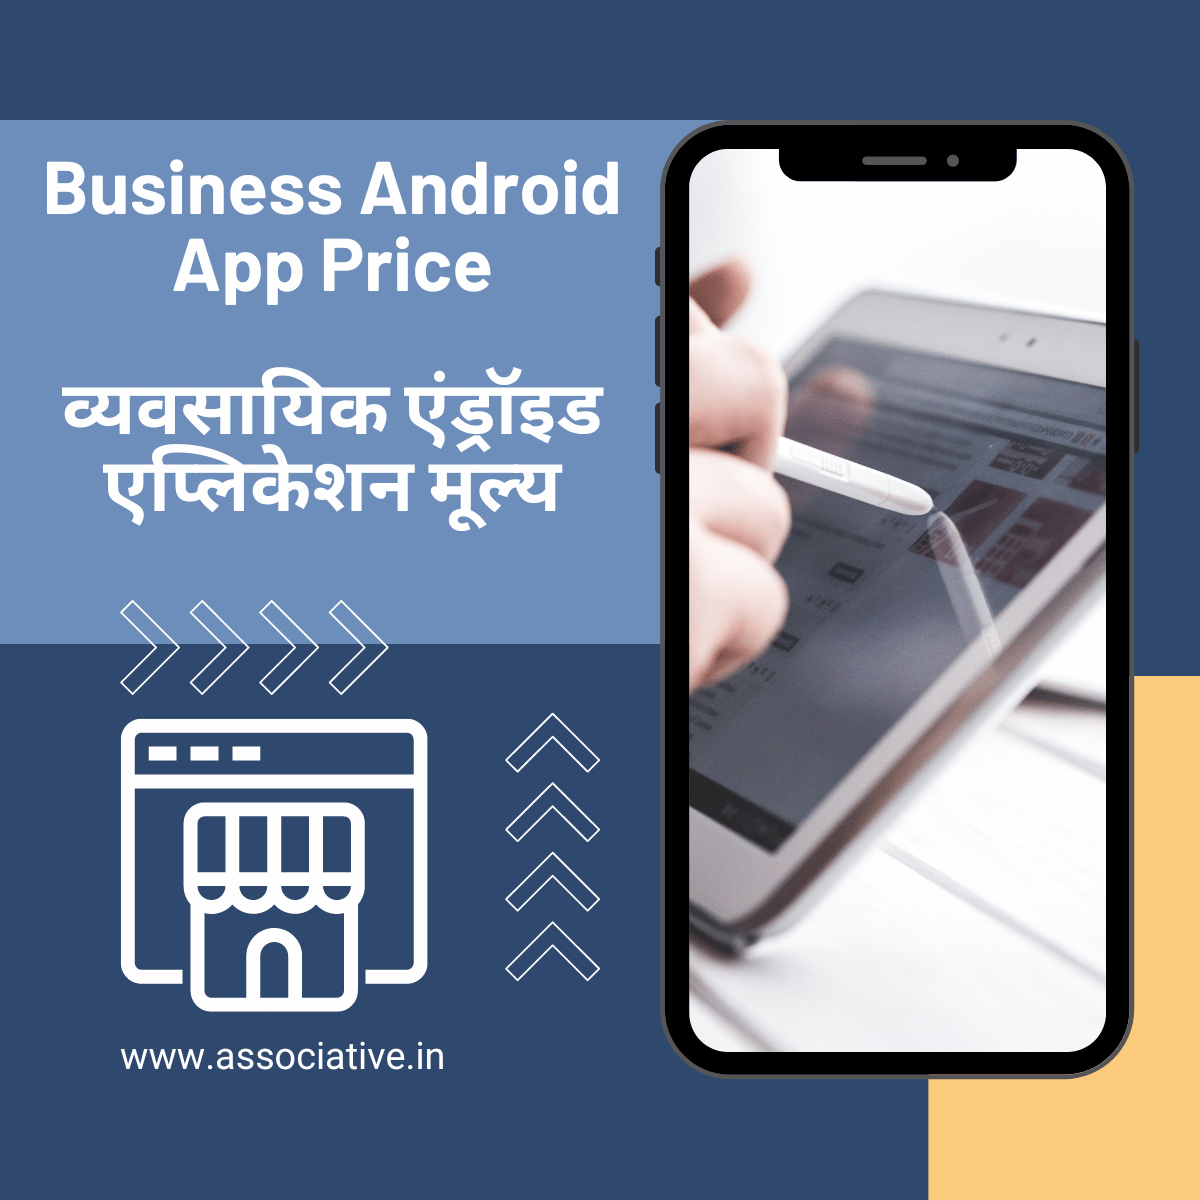 Business Android App Price
व्यवसायिक एंड्रॉइड एप्लिकेशन मूल्य